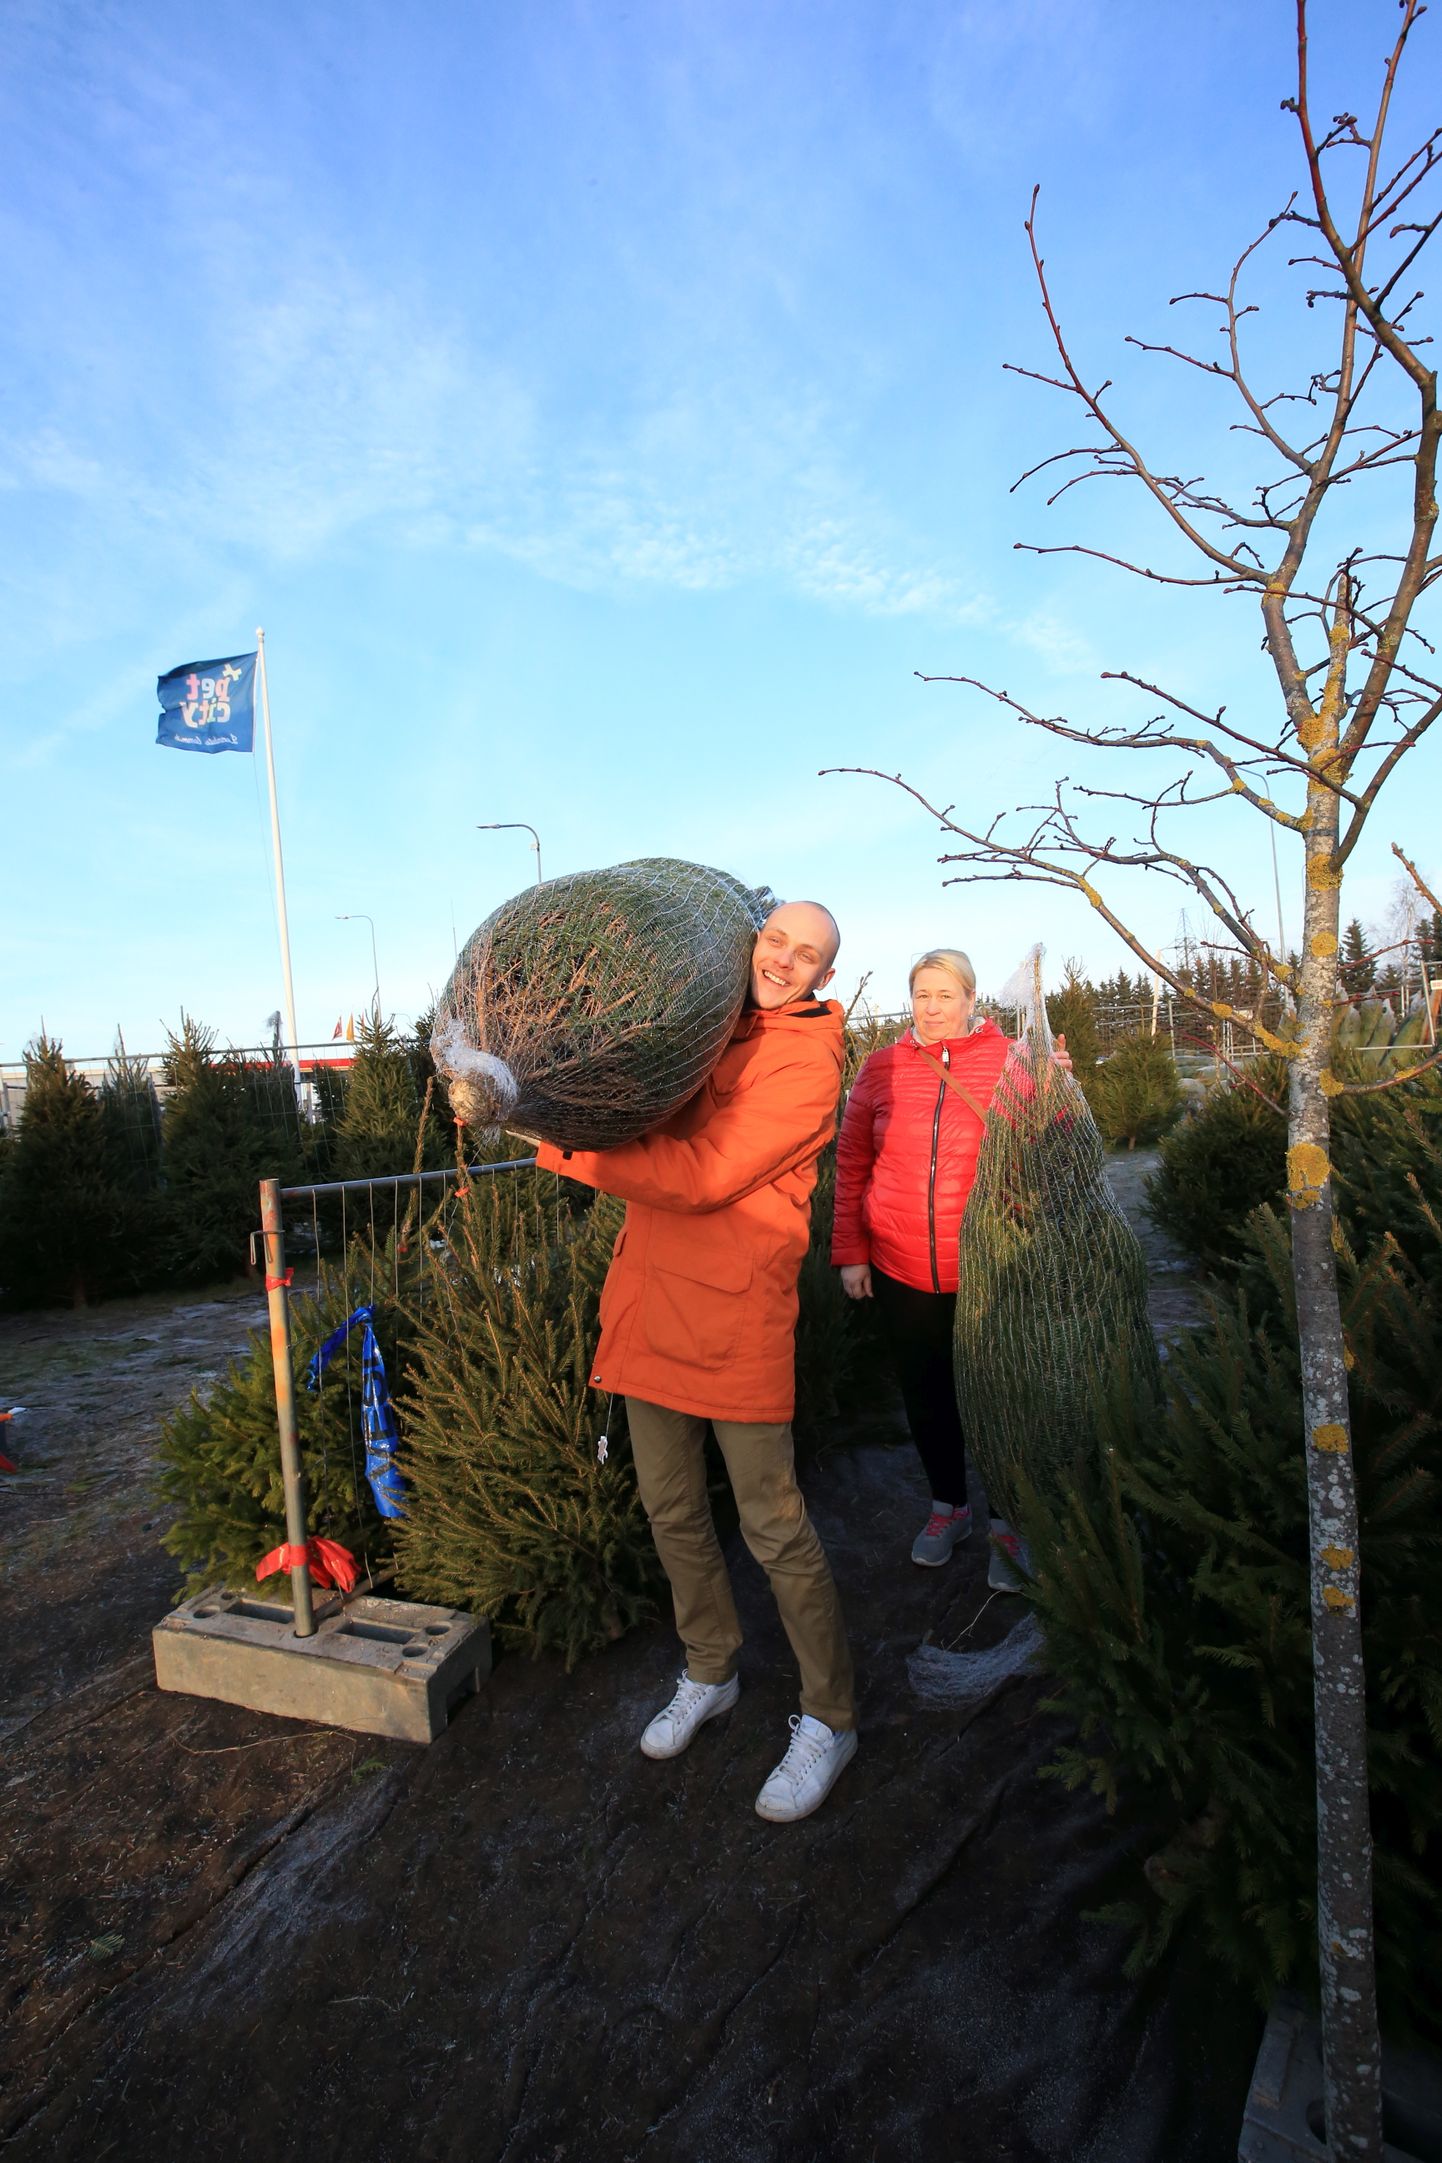 Võrust pärit Märt Roskrut ja Eike Riivik leidsid omale sobiliku jõulupuu Lõunakeskuse müügiplatsilt. «Oleme siit juba mitu aastat võtnud. Siit saab ju kingitused ka kohe kaasa võtta,» sõnas Riivik ning lubas kuuse kodus kohe ära ehtida.